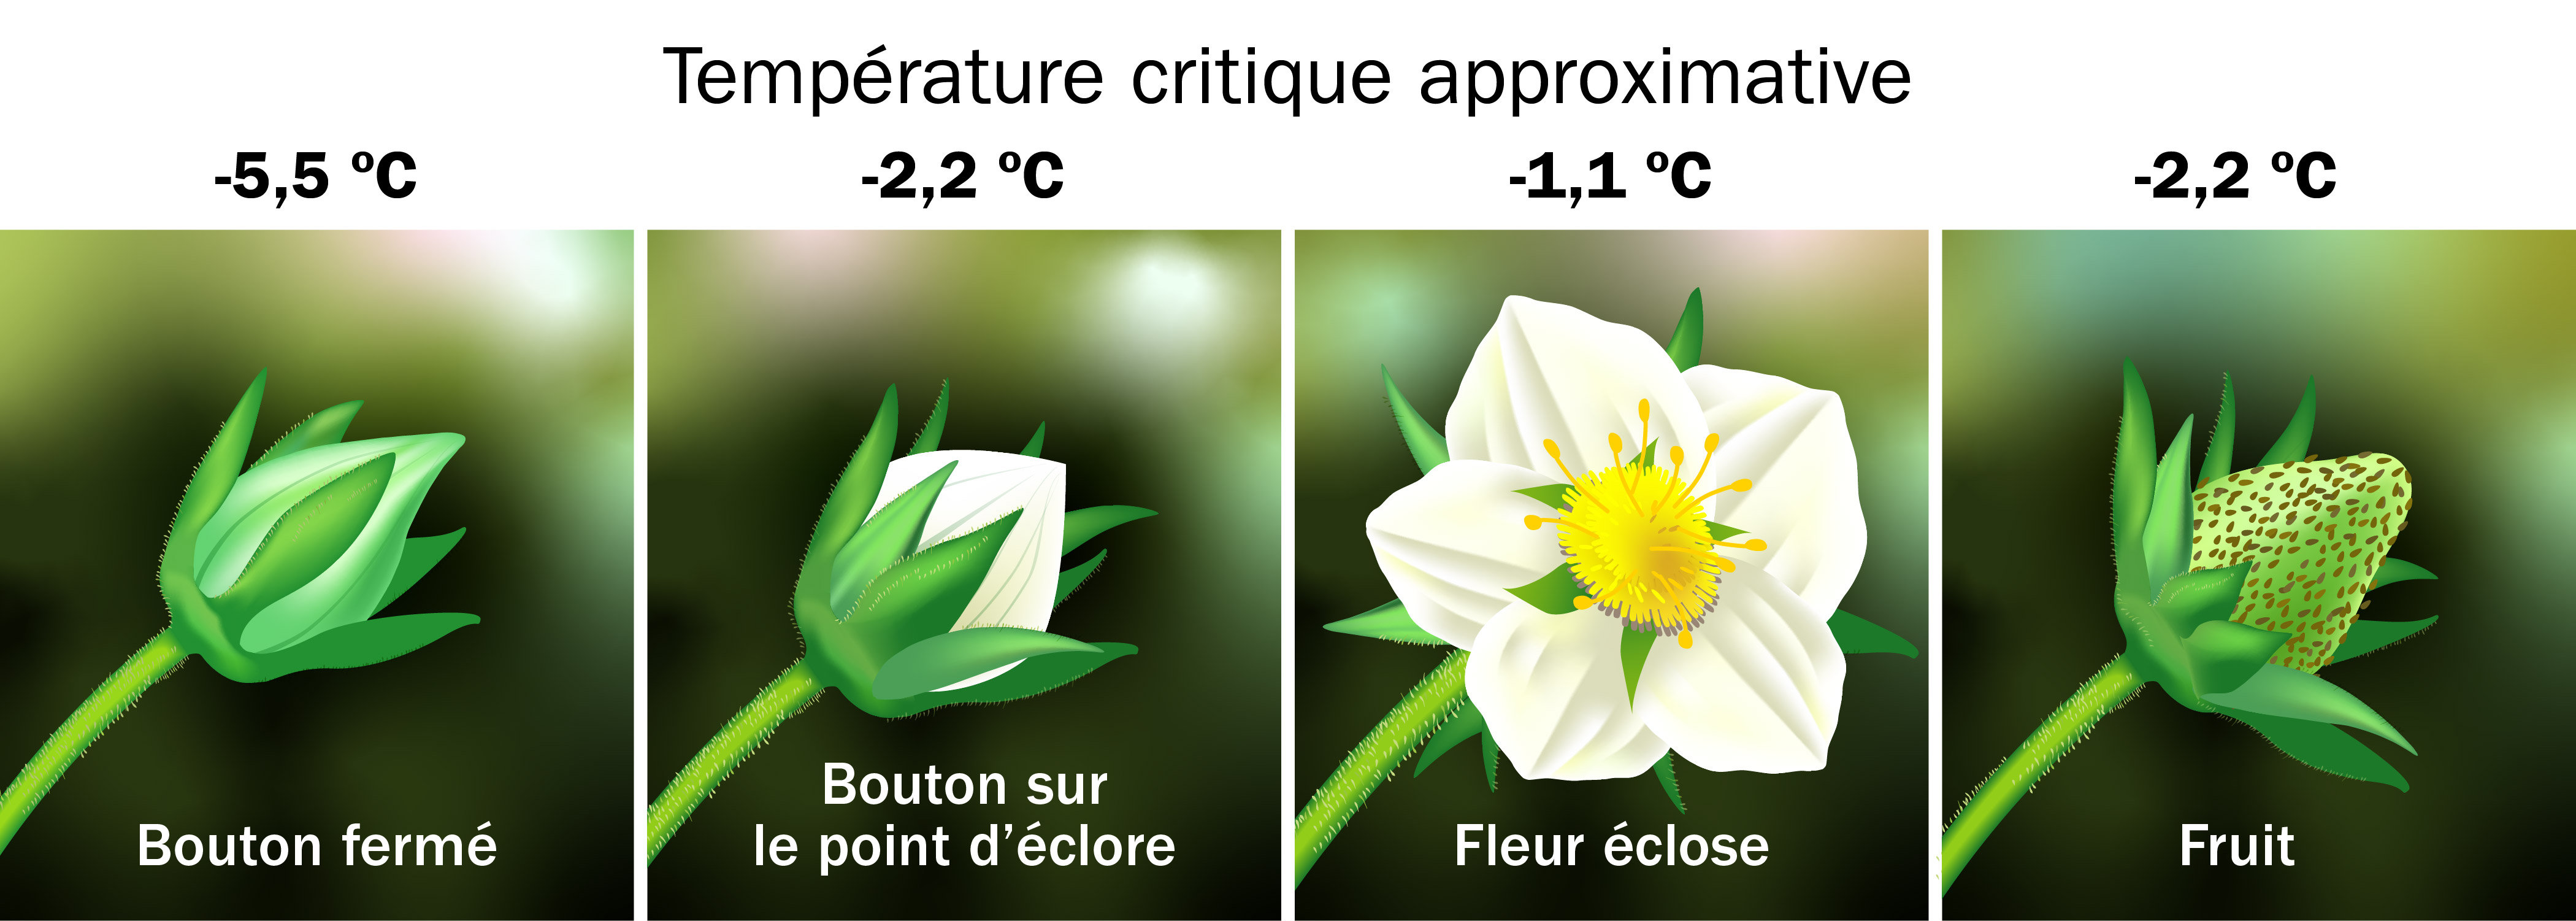 Les températures critiques approximatives sont de -5,5 °C pour le bouton fermé, -2,2 °C pour le bouton sur le point d’éclore, -1,1 °C pour la fleur éclose et -2,2 °C pour le fruit. De gauche à droite : Un bouton fermé est une fleur fermée, complètement verte et sans pétales blancs. Un bouton sur le point d’éclore est une fleur fermée où des pétales blancs sont visibles au centre du calicule. Une fleur éclose a des pétales blancs avec un centre jaune. Vert et blanc, un fruit immature a une forme conique arrondie.